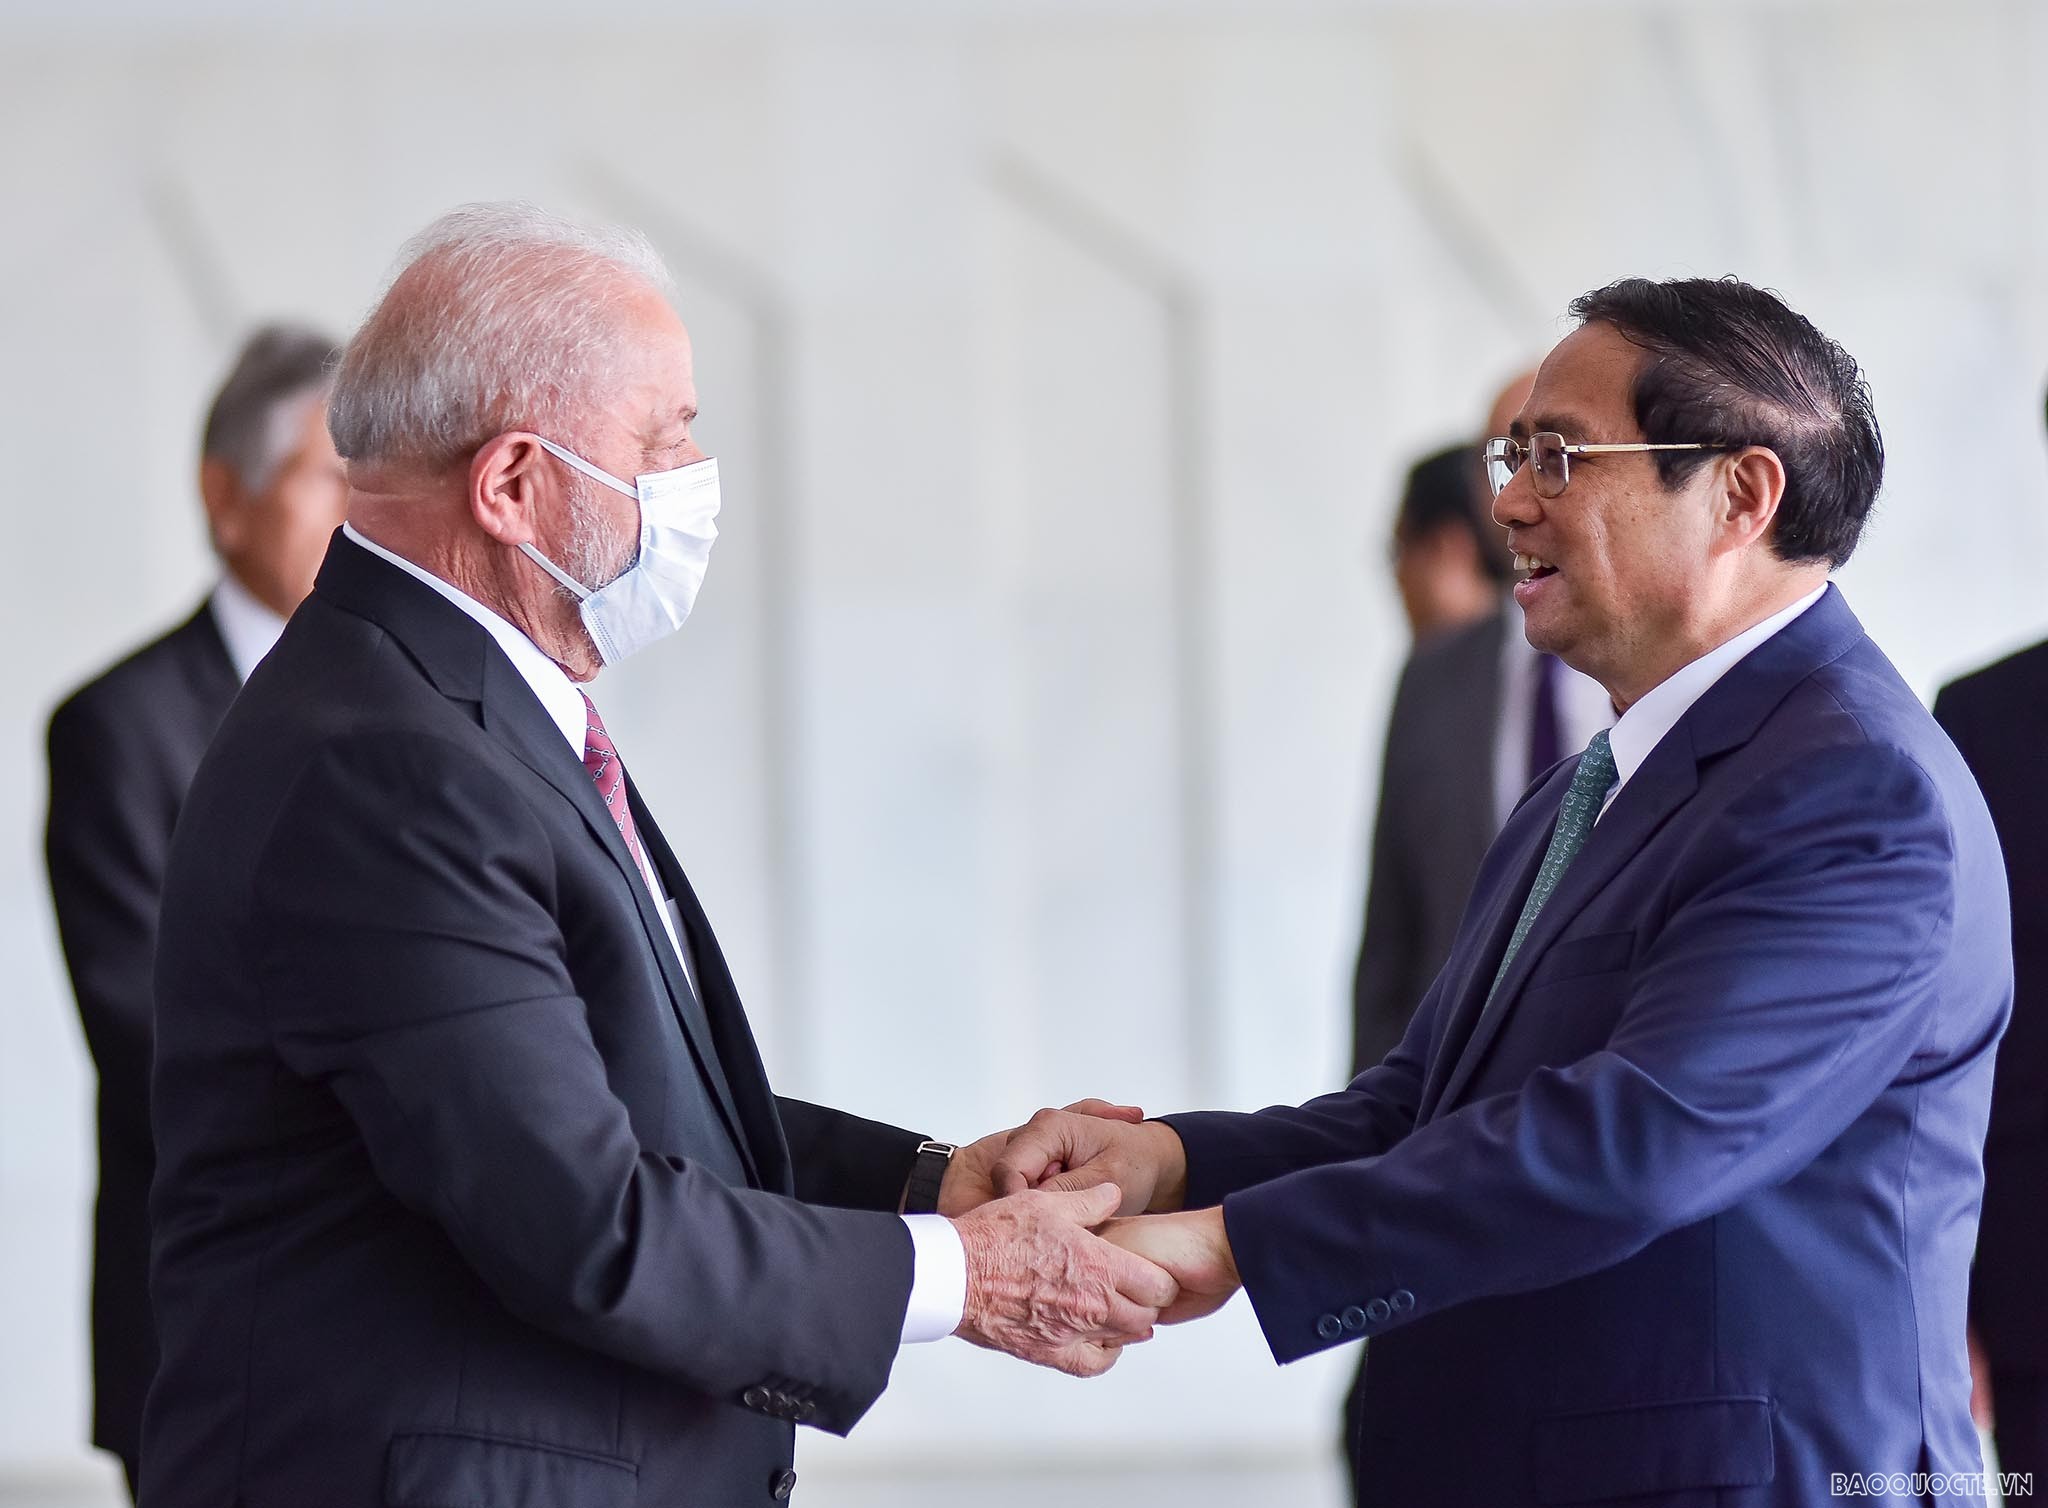 Thủ tướng Phạm Minh Chính kết thúc tốt đẹp chuyến thăm chính thức Brazil